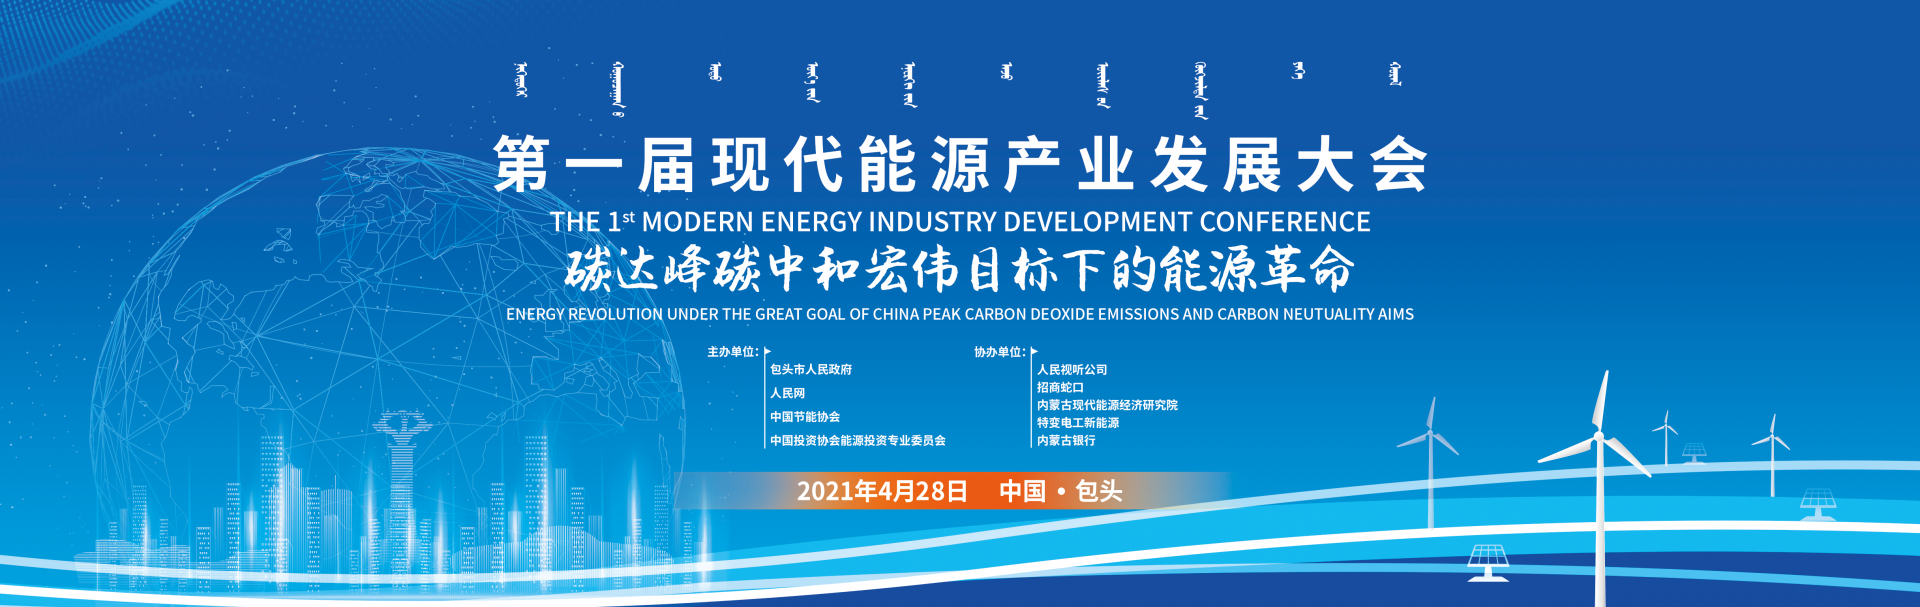 第二届现代能源产业发展大会包头签下 827.3 亿元投资